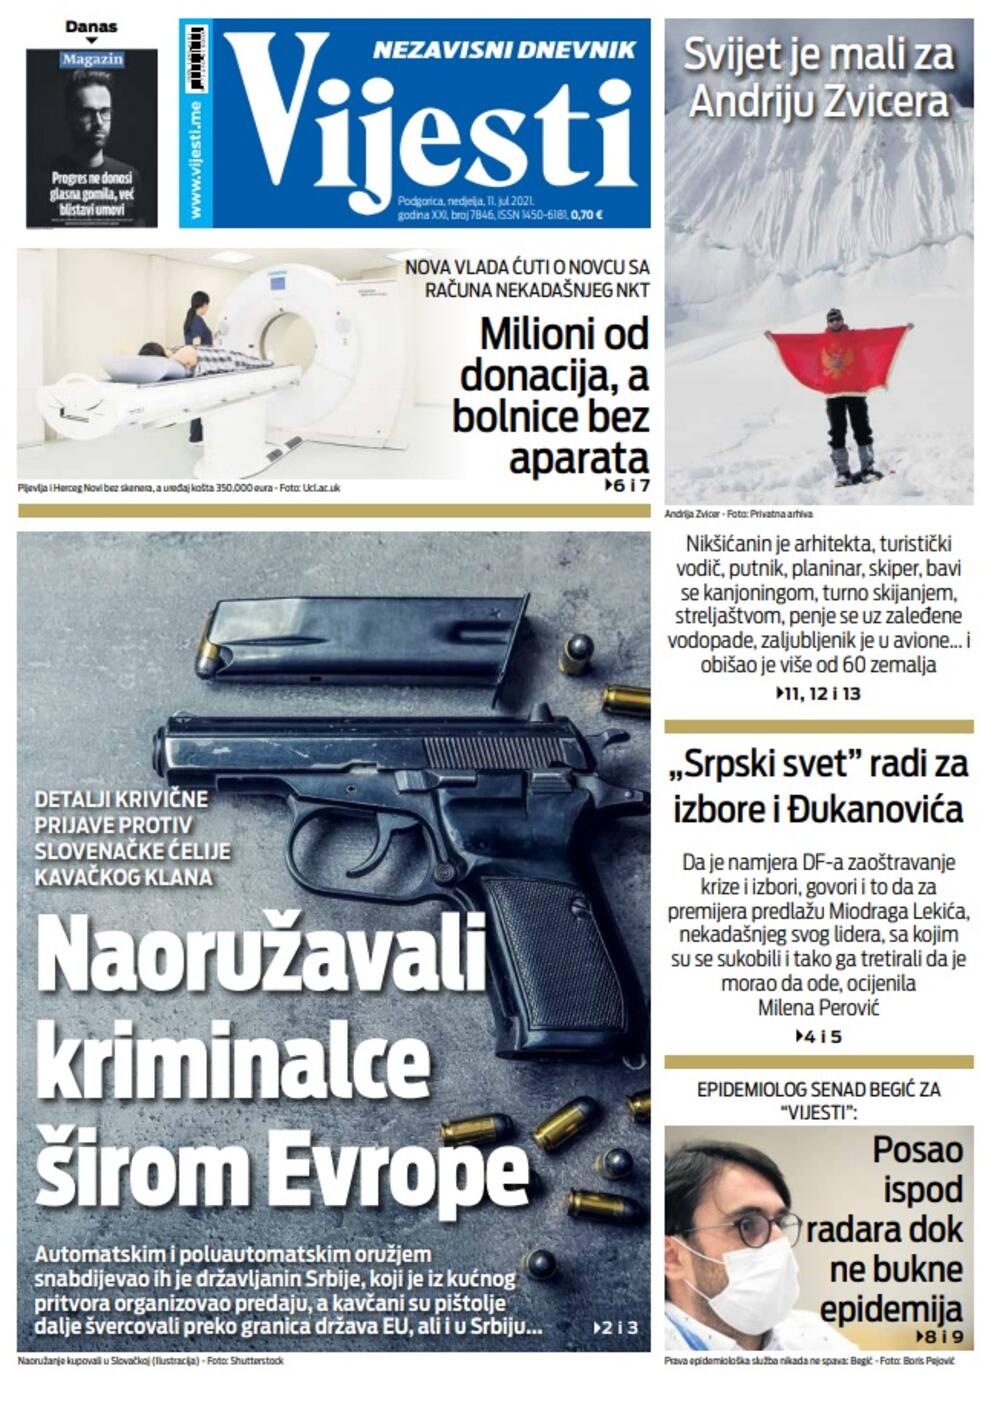 Naslovna strana "Vijesti" za nedjelju 11. jul 2021. godine, Foto: Vijesti